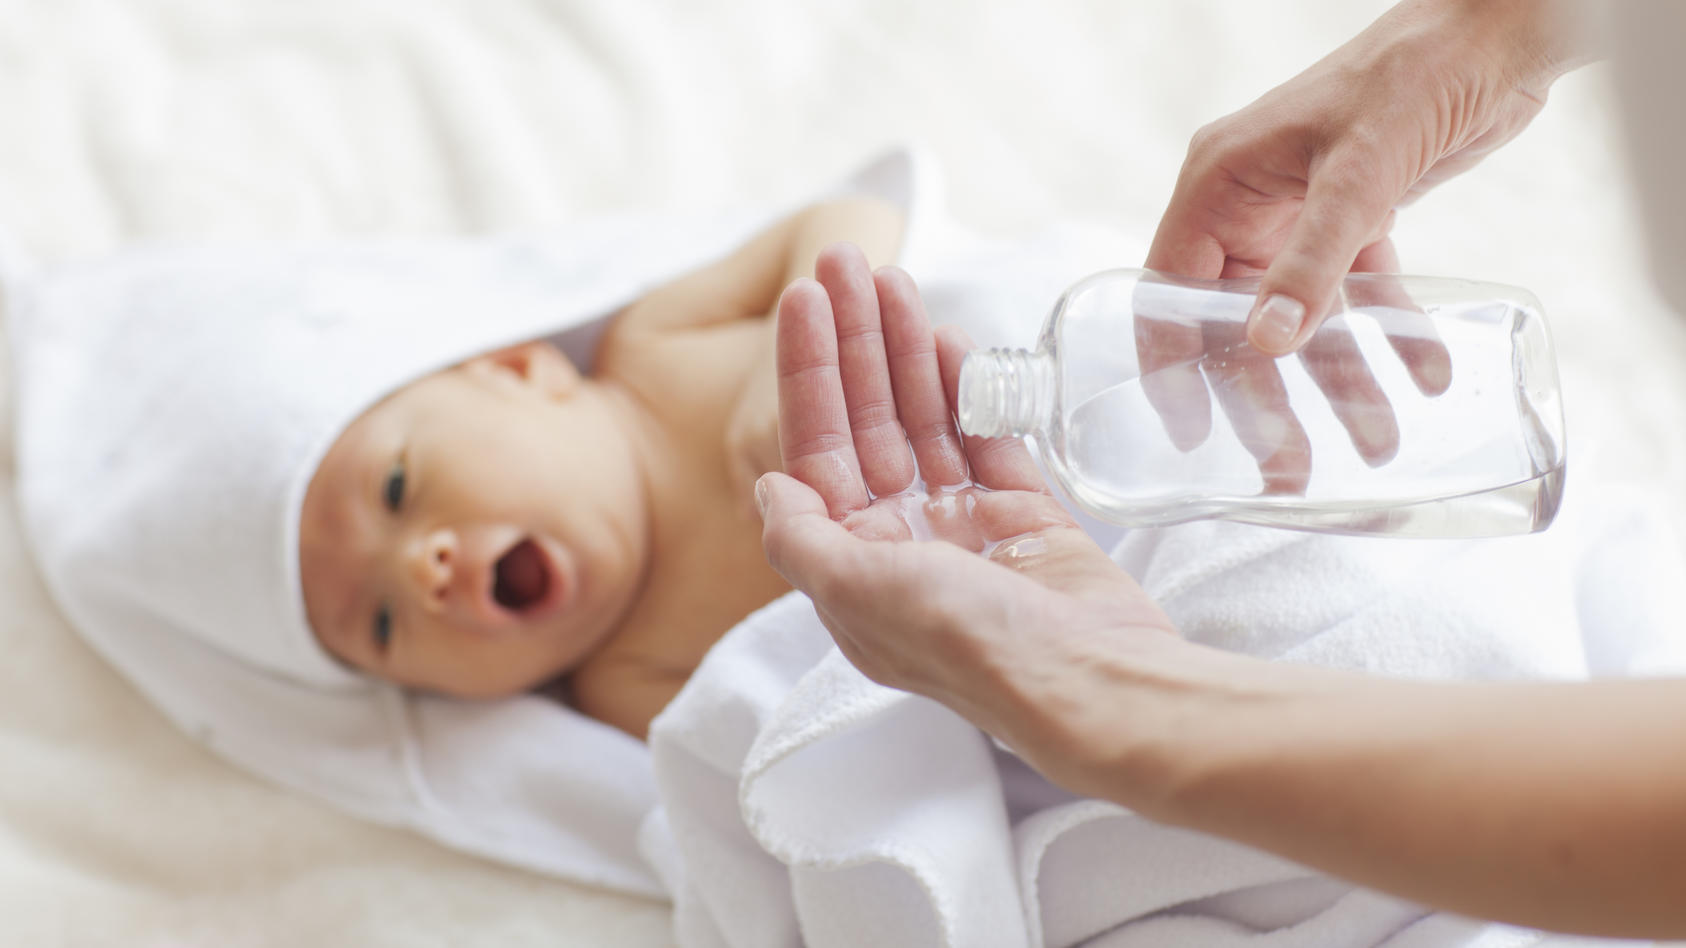 Babyöle kommen direkt an die empfindliche Haut, deshalb sind die Inhaltsstoffe hier besonders wichtig.